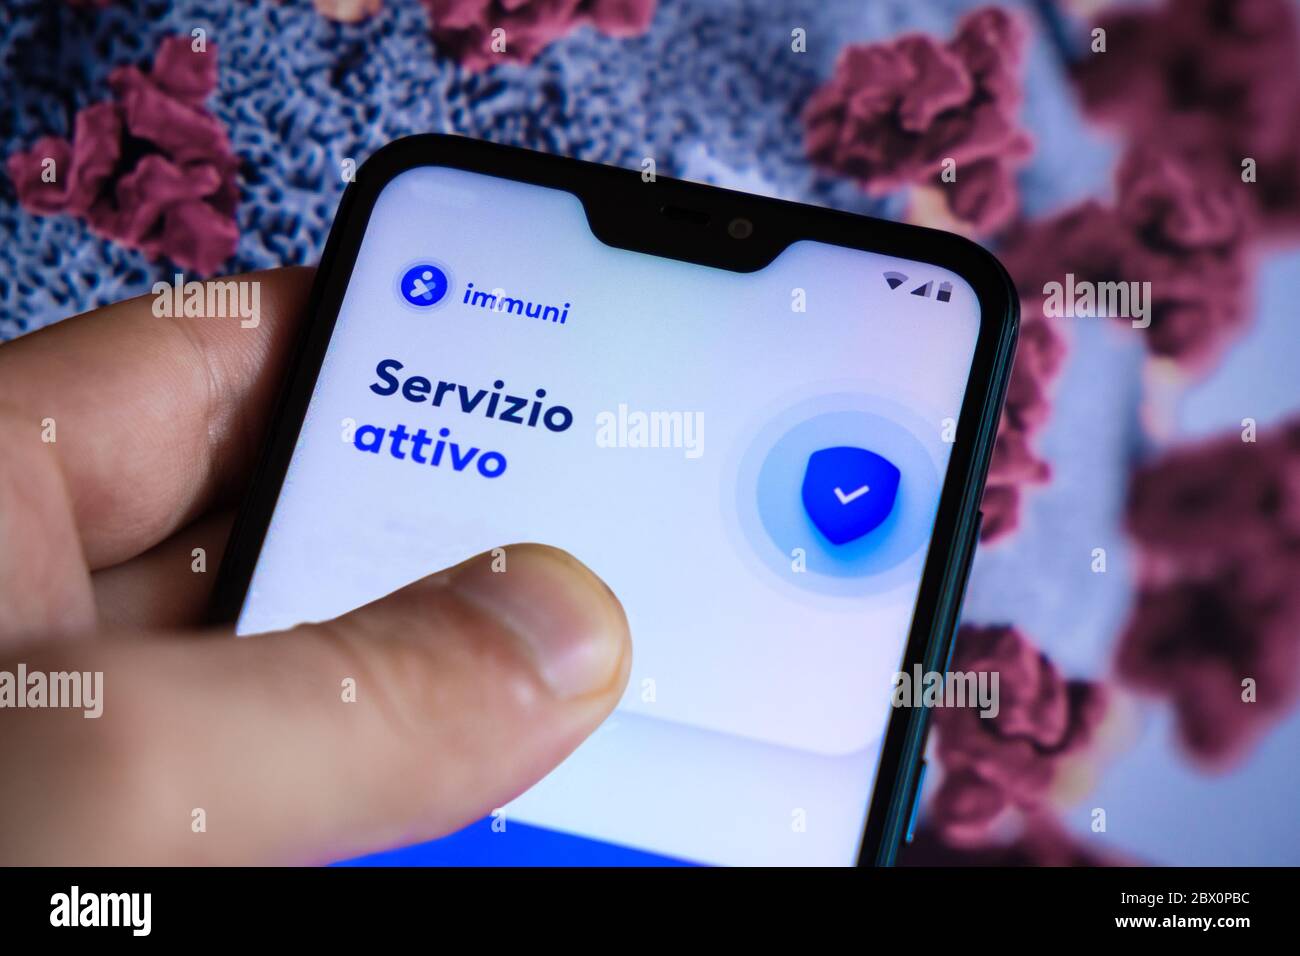 Une nouvelle application téléphonique Immuni, promue par le gouvernement italien et développée par Bending Spoon, pour la recherche de contacts dans les cas COVID-19 parmi les citoyens italiens. Banque D'Images